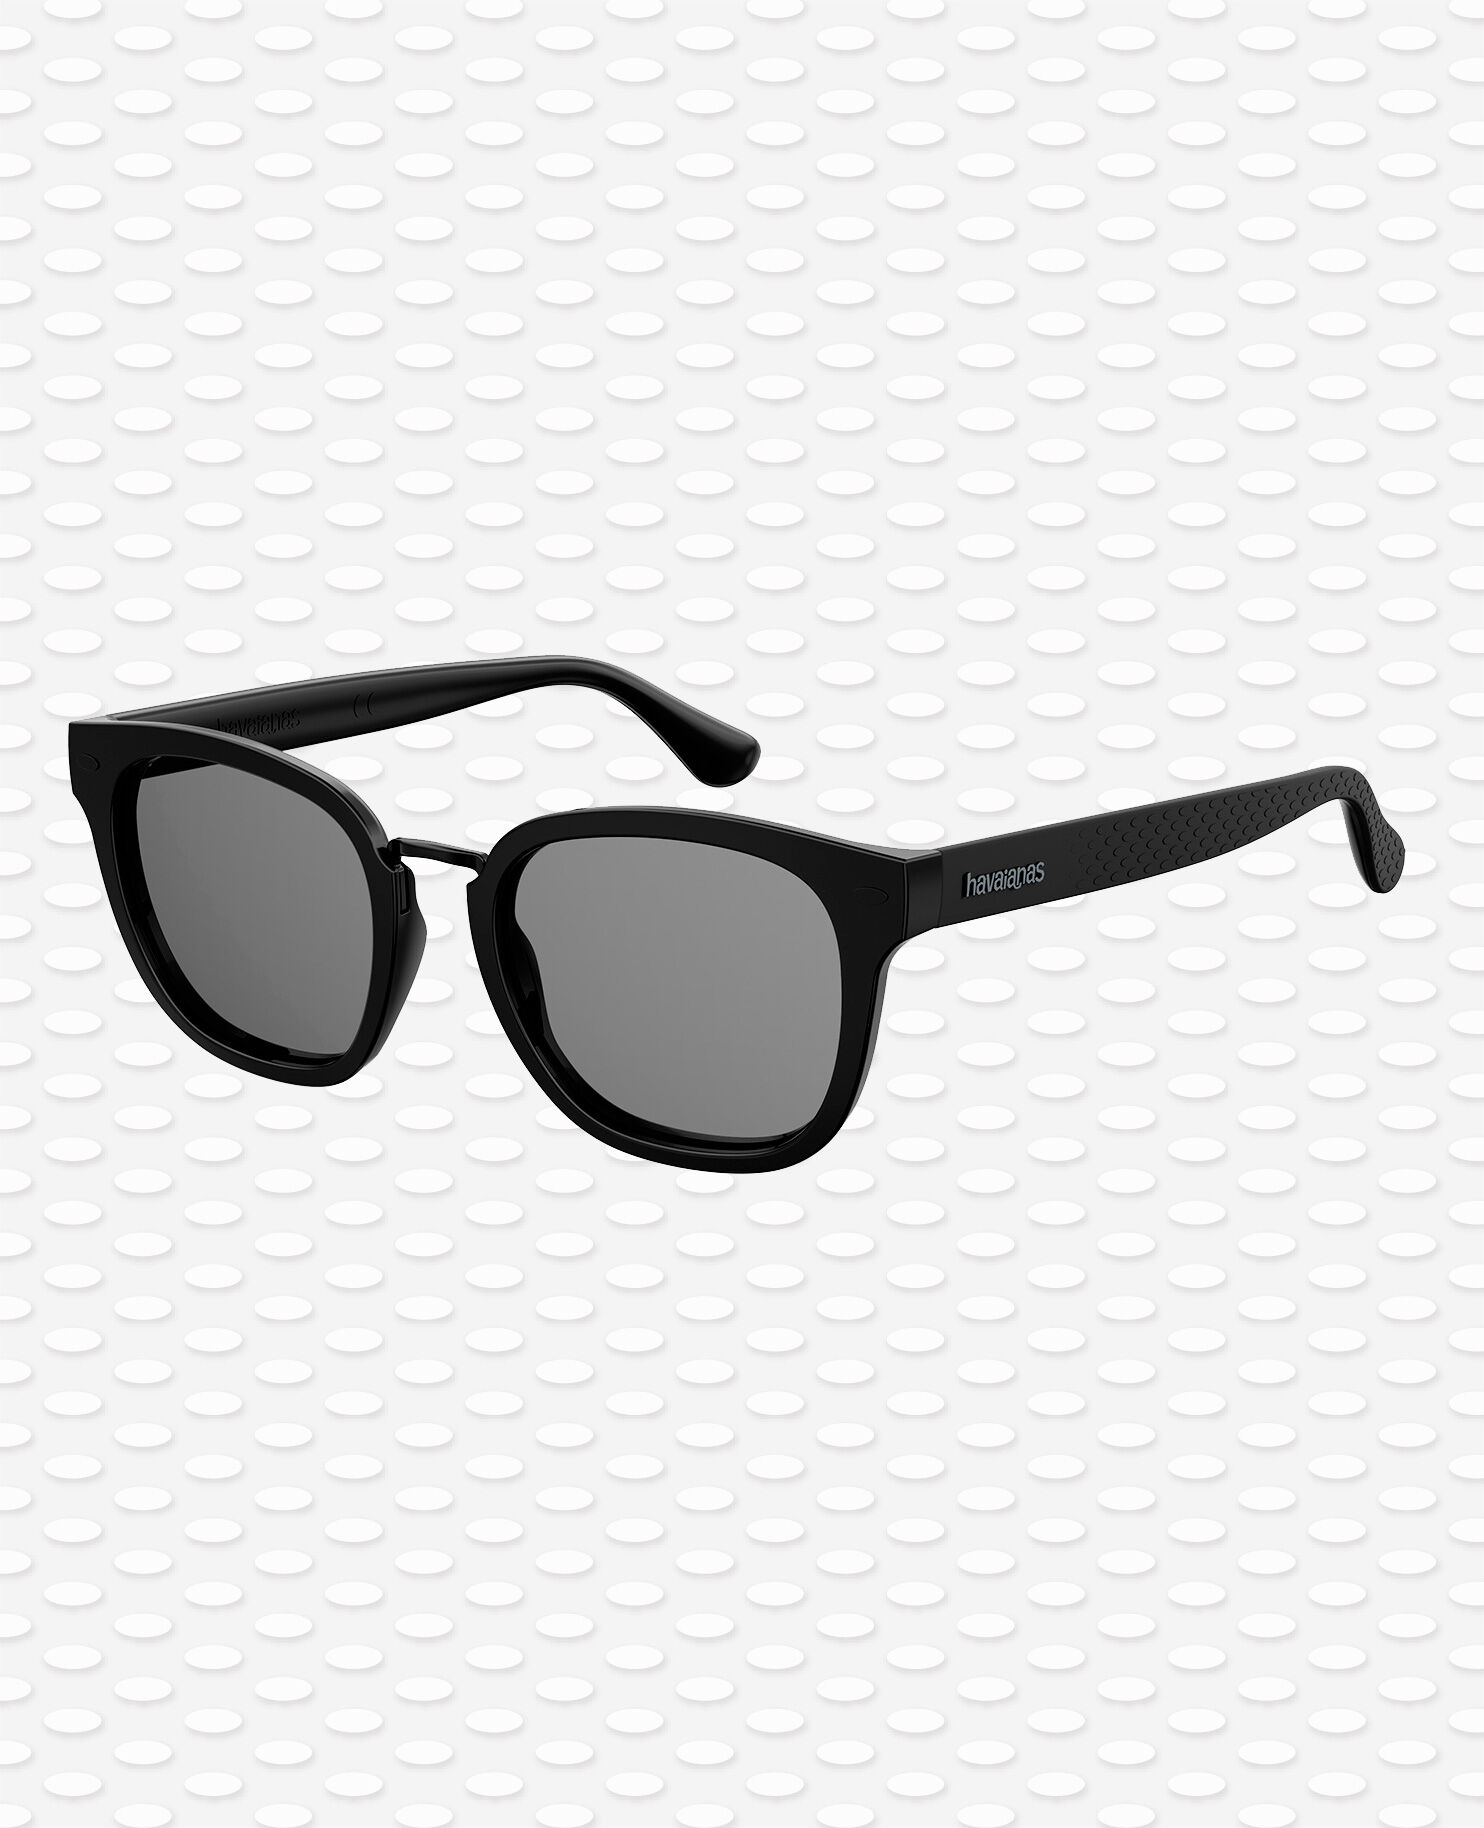 Grau Einheitlich Rabatt 74 % Havaianas Sonnenbrille DAMEN Accessoires Sonnenbrille 